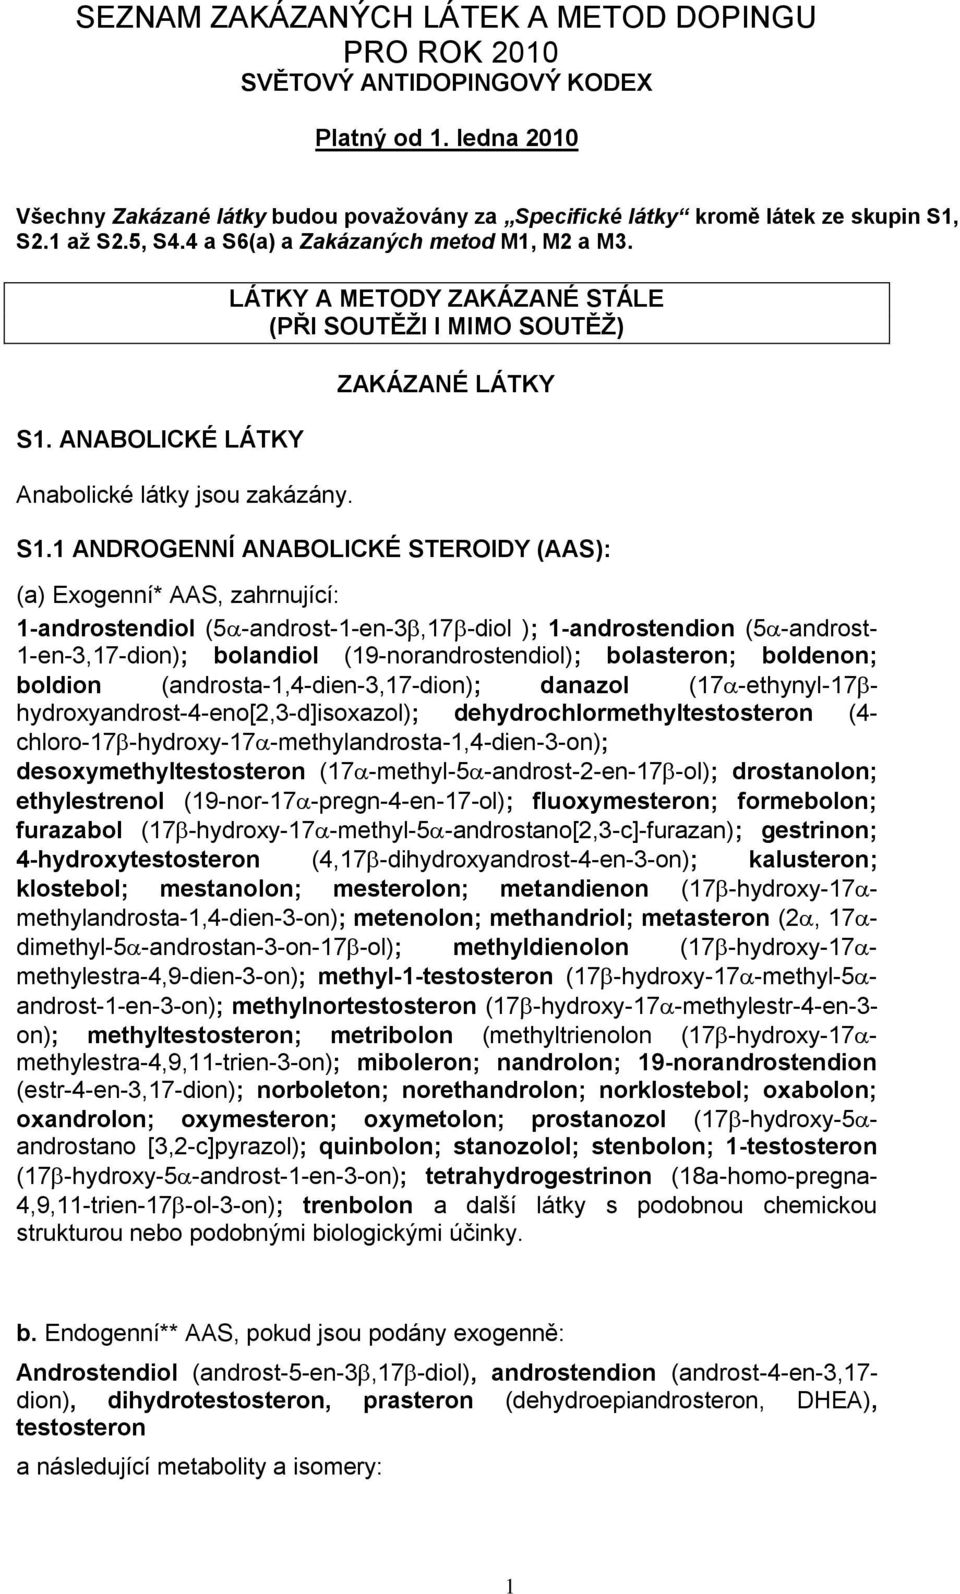 1 ANDROGENNÍ ANABOLICKÉ STEROIDY (AAS): (a) Exogenní* AAS, zahrnující: 1-androstendiol (5-androst-1-en-3,17-diol ); 1-androstendion (5-androst- 1-en-3,17-dion); bolandiol (19-norandrostendiol);